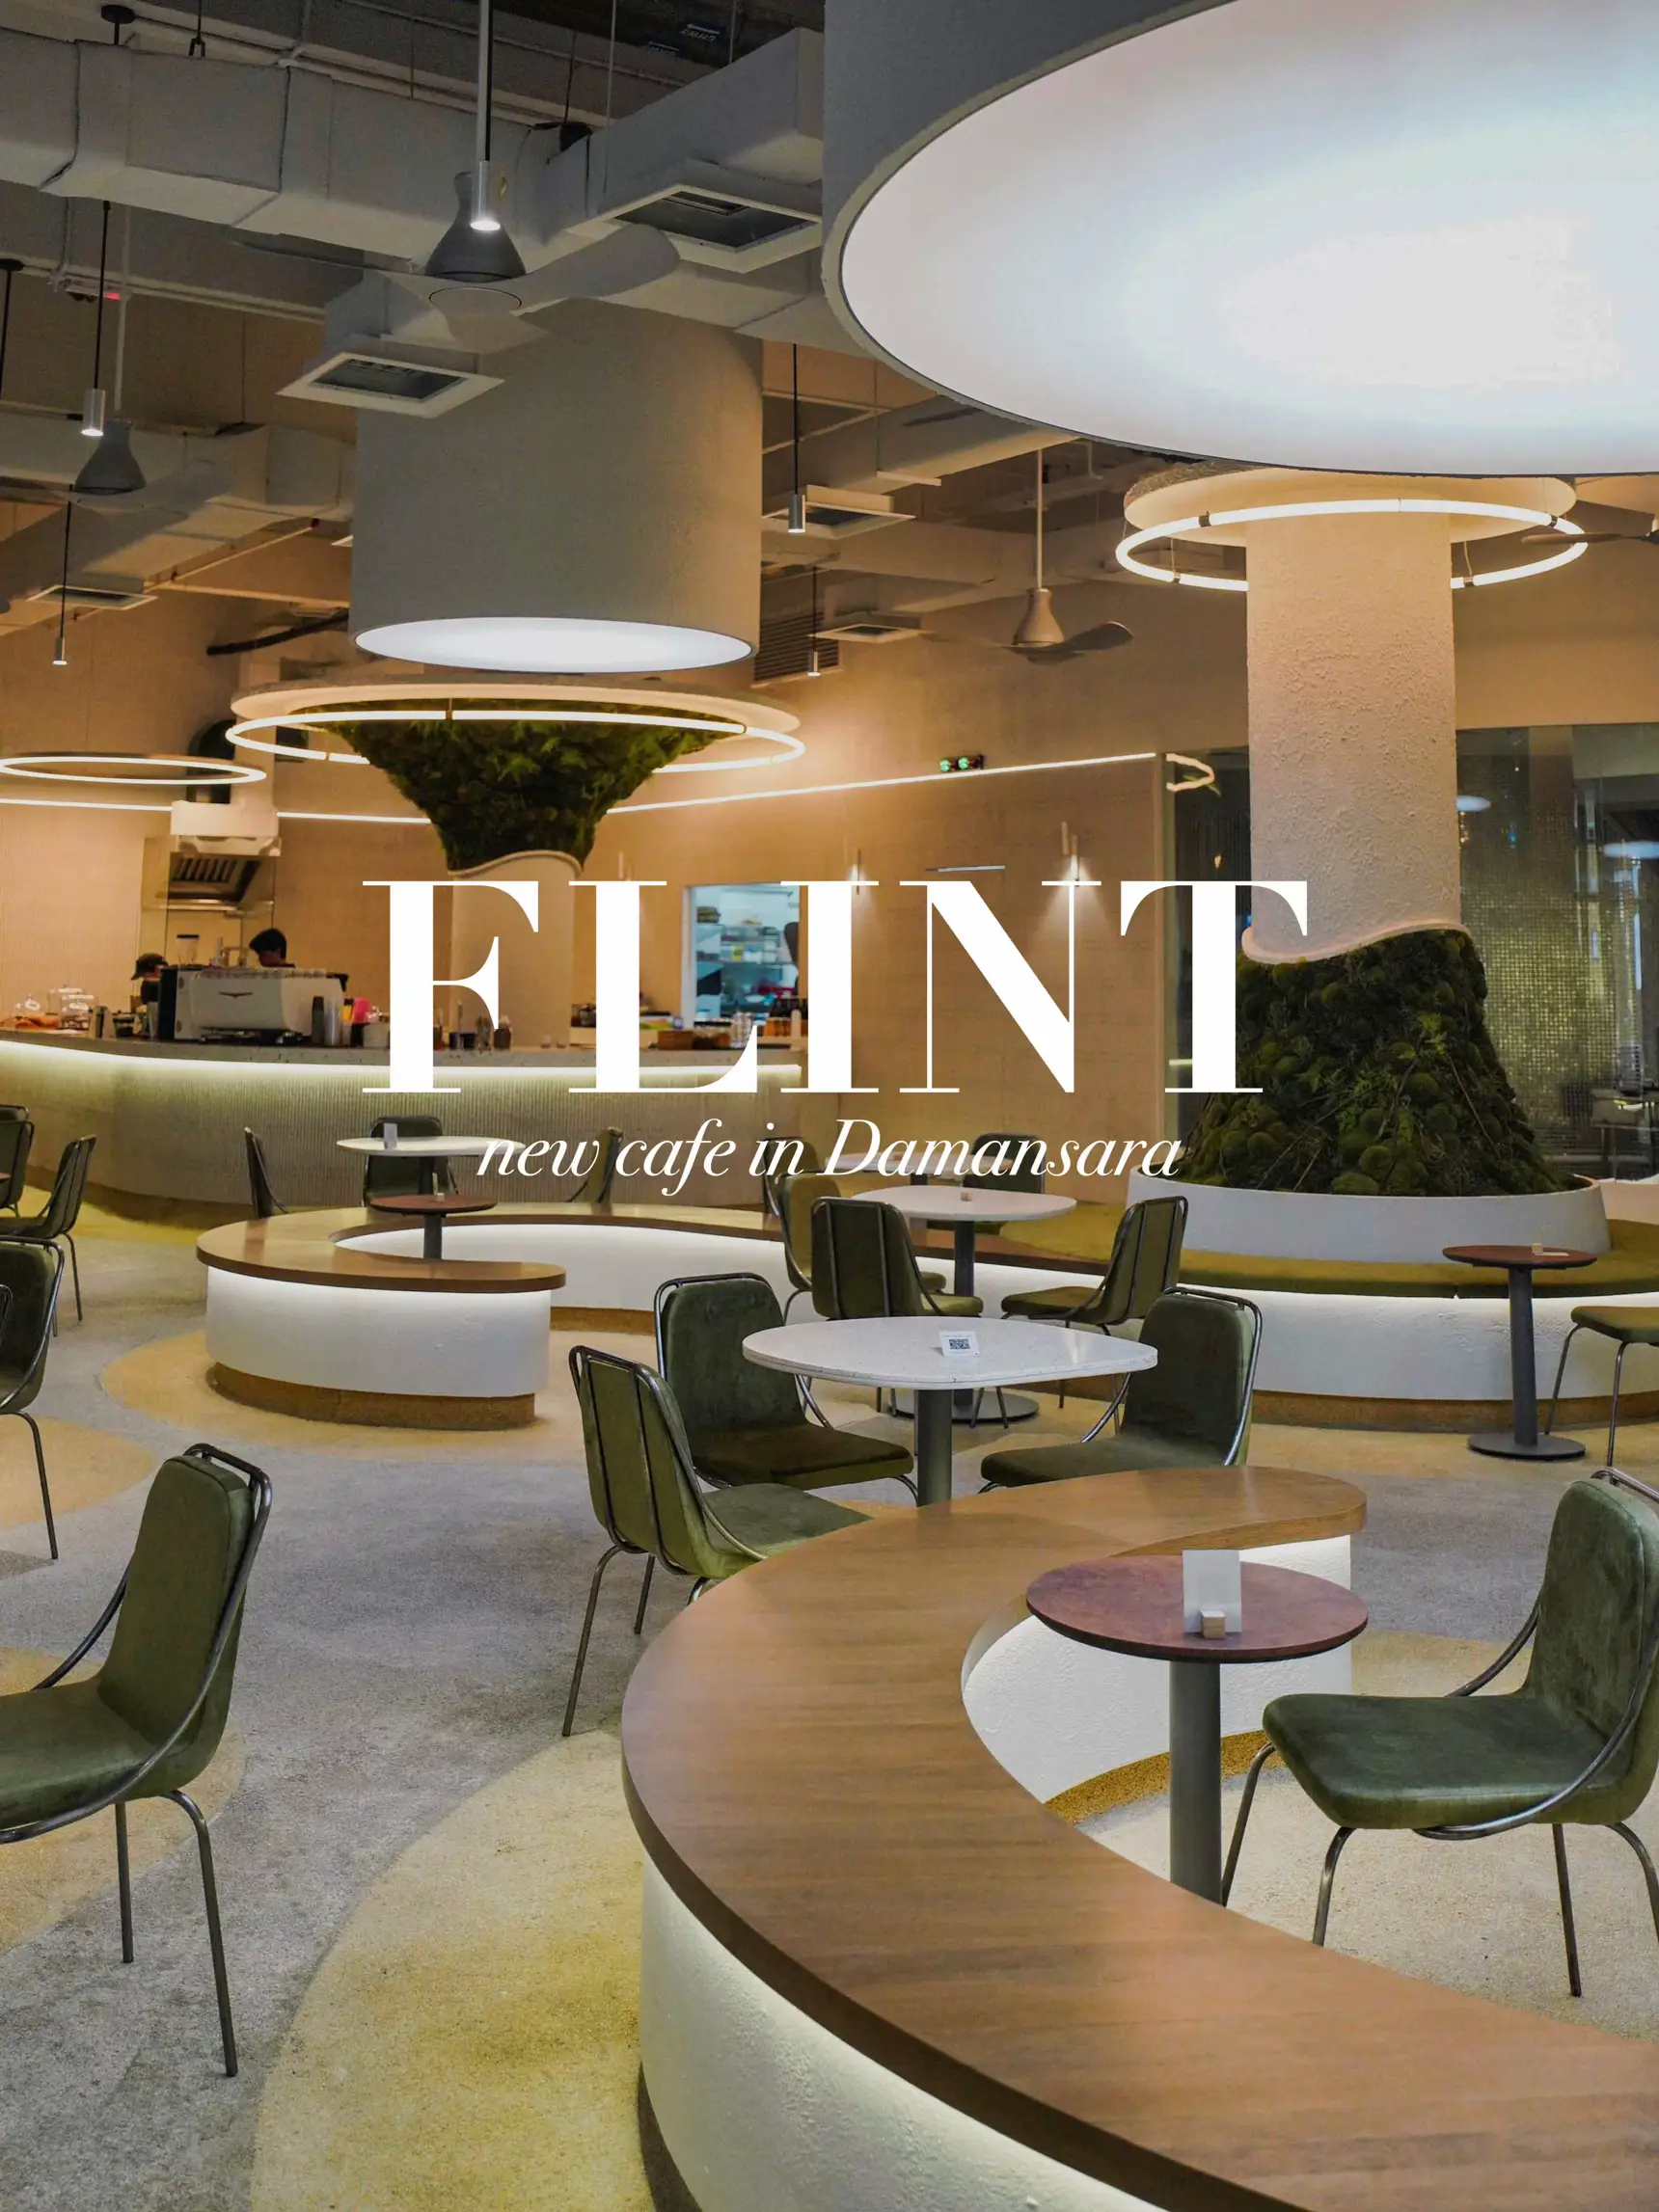 Flint Cafe's images(0)